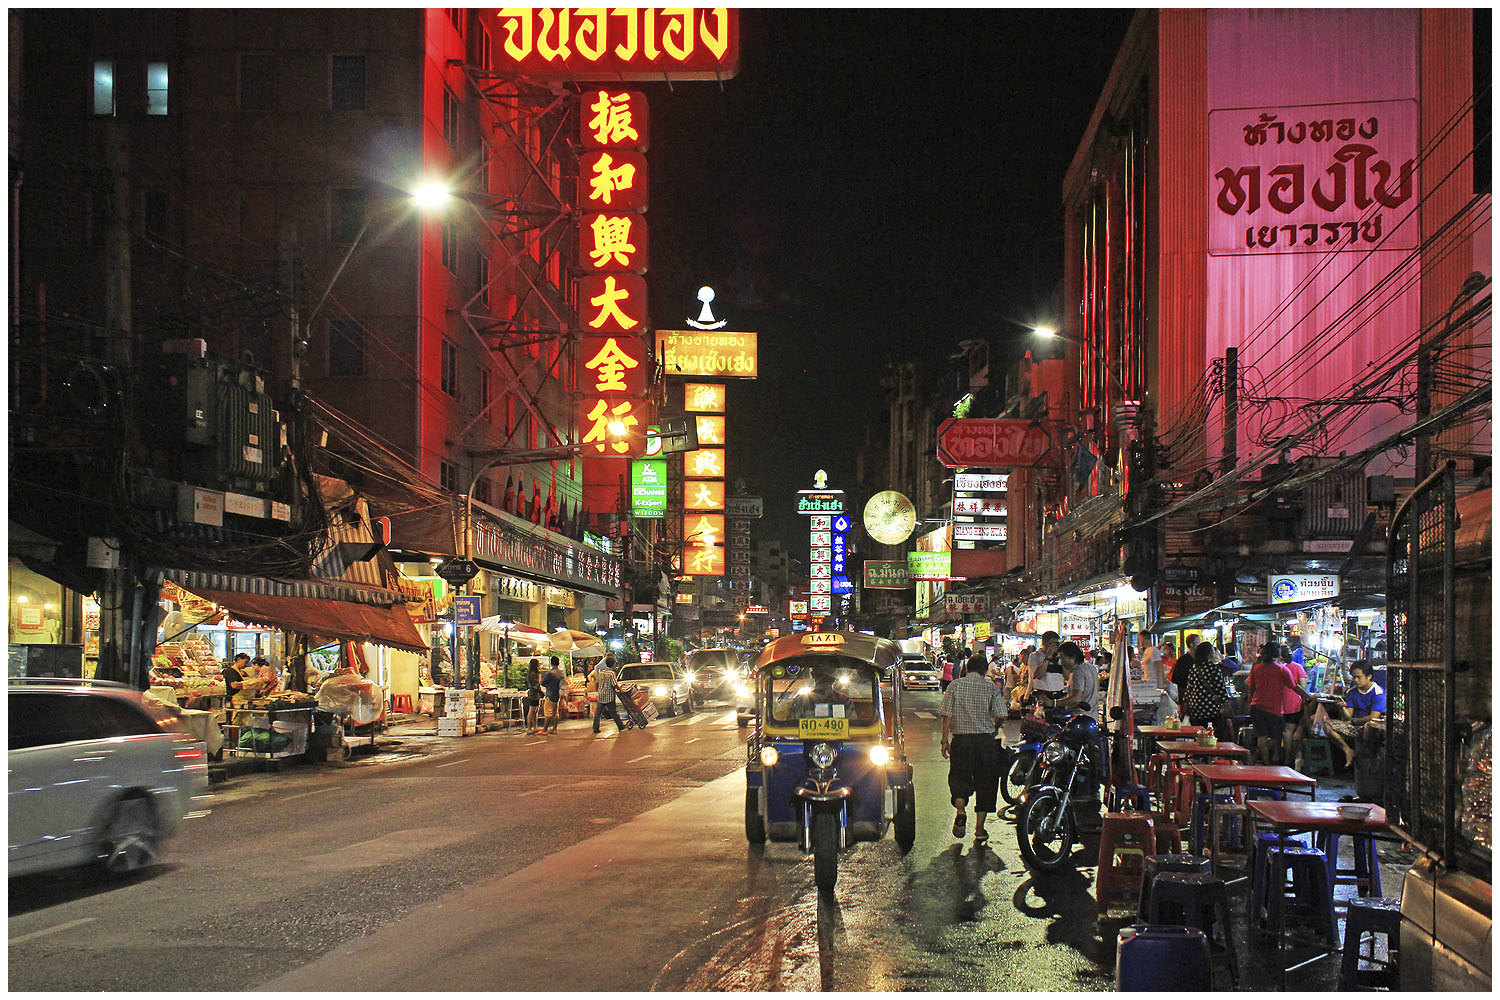 Chinatown Bangkok at night